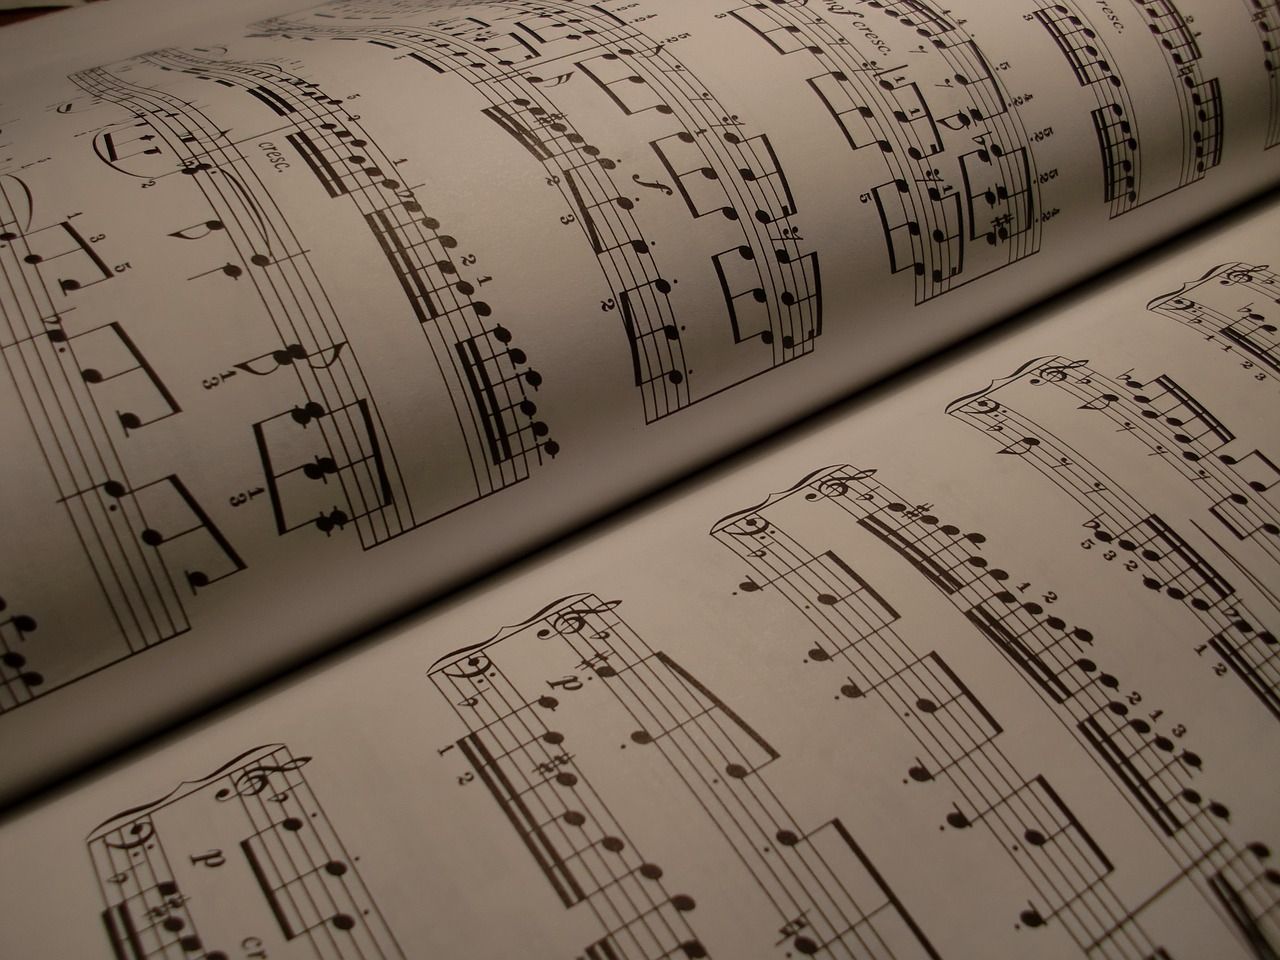  Musik Hintergrundbild 1280x960. Resultate Musik Hintergrund Foto auf Pixabay